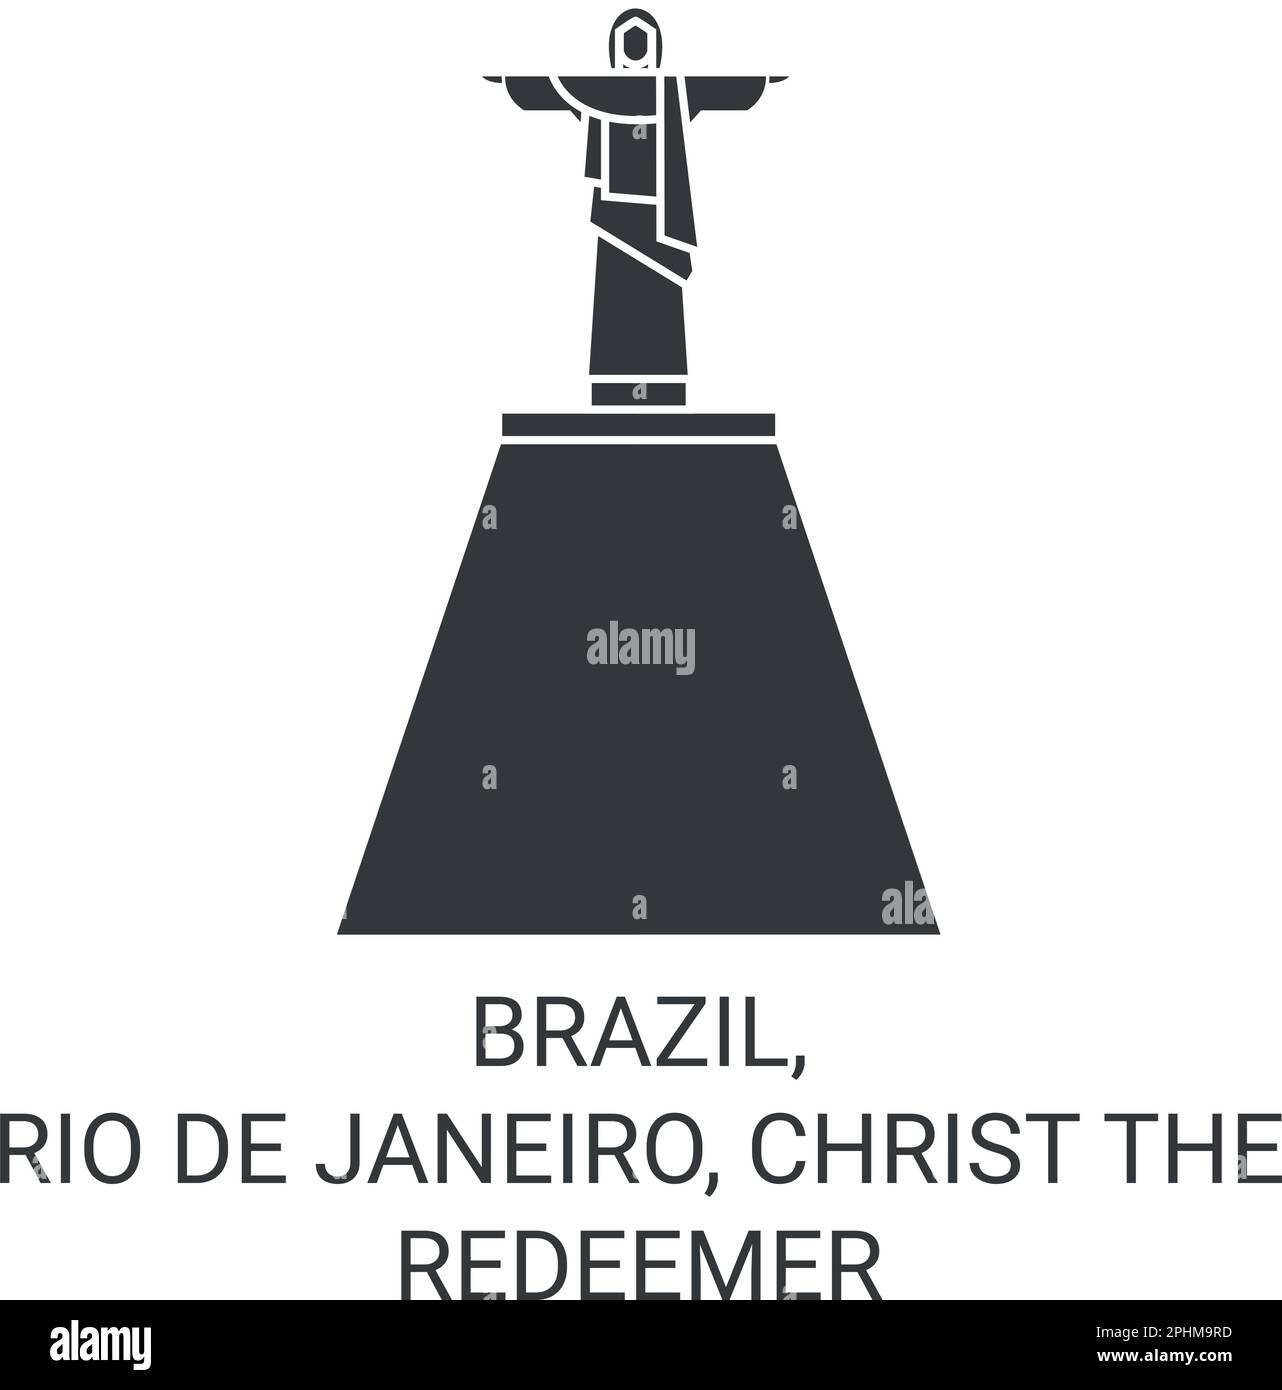 Brazil, Rio De Janeiro, Christ The Redeemer travel landmark vector illustration Stock Vector